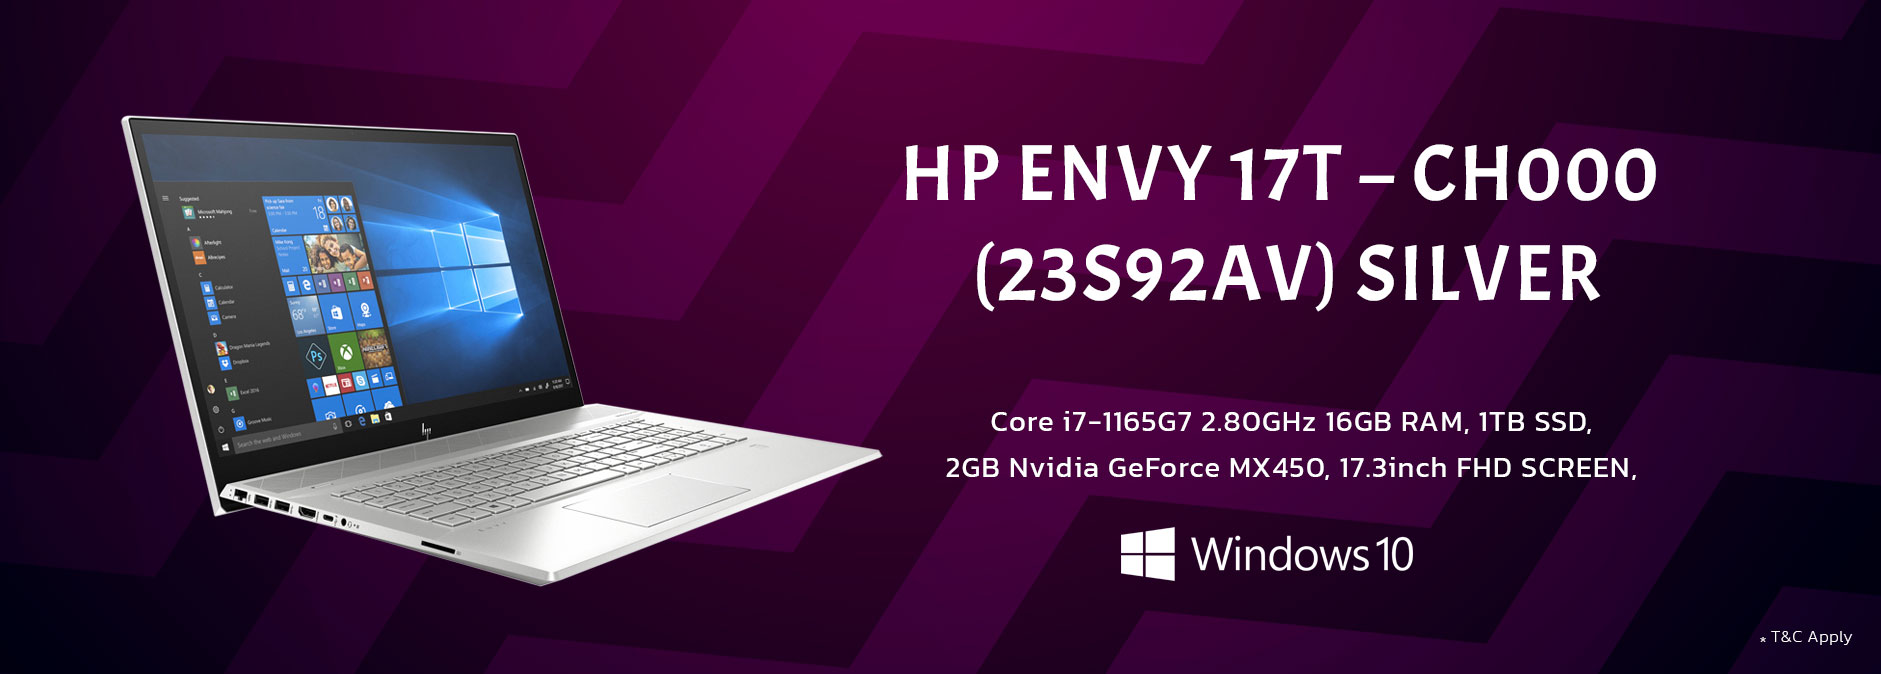 HP Envy 17T- Choo (23S92AV) Silver